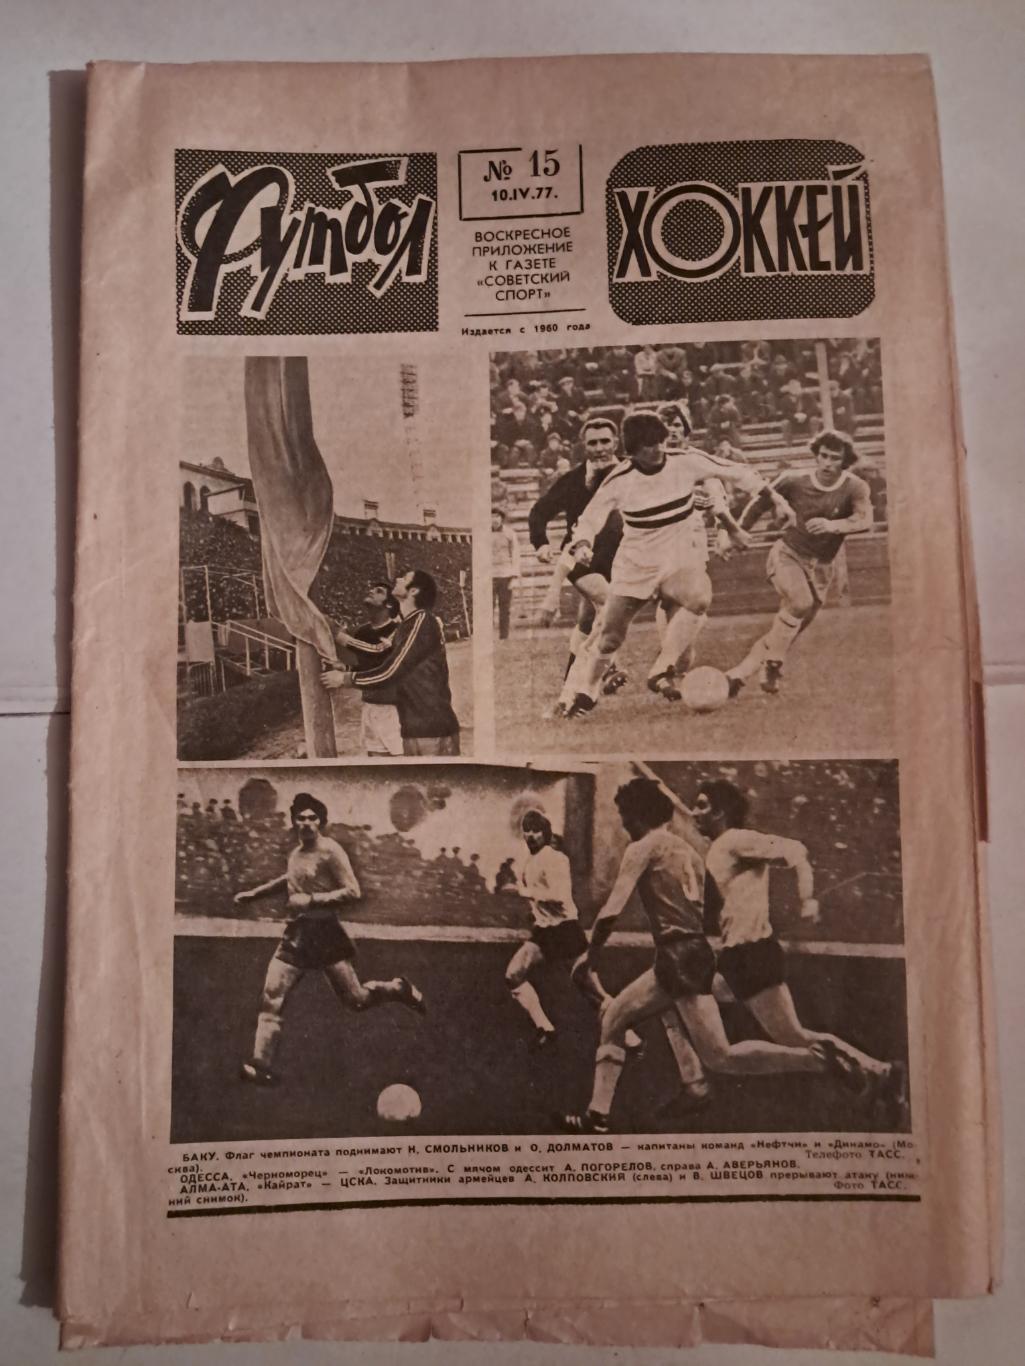 Еженедельник Футбол Хоккей №15 1977